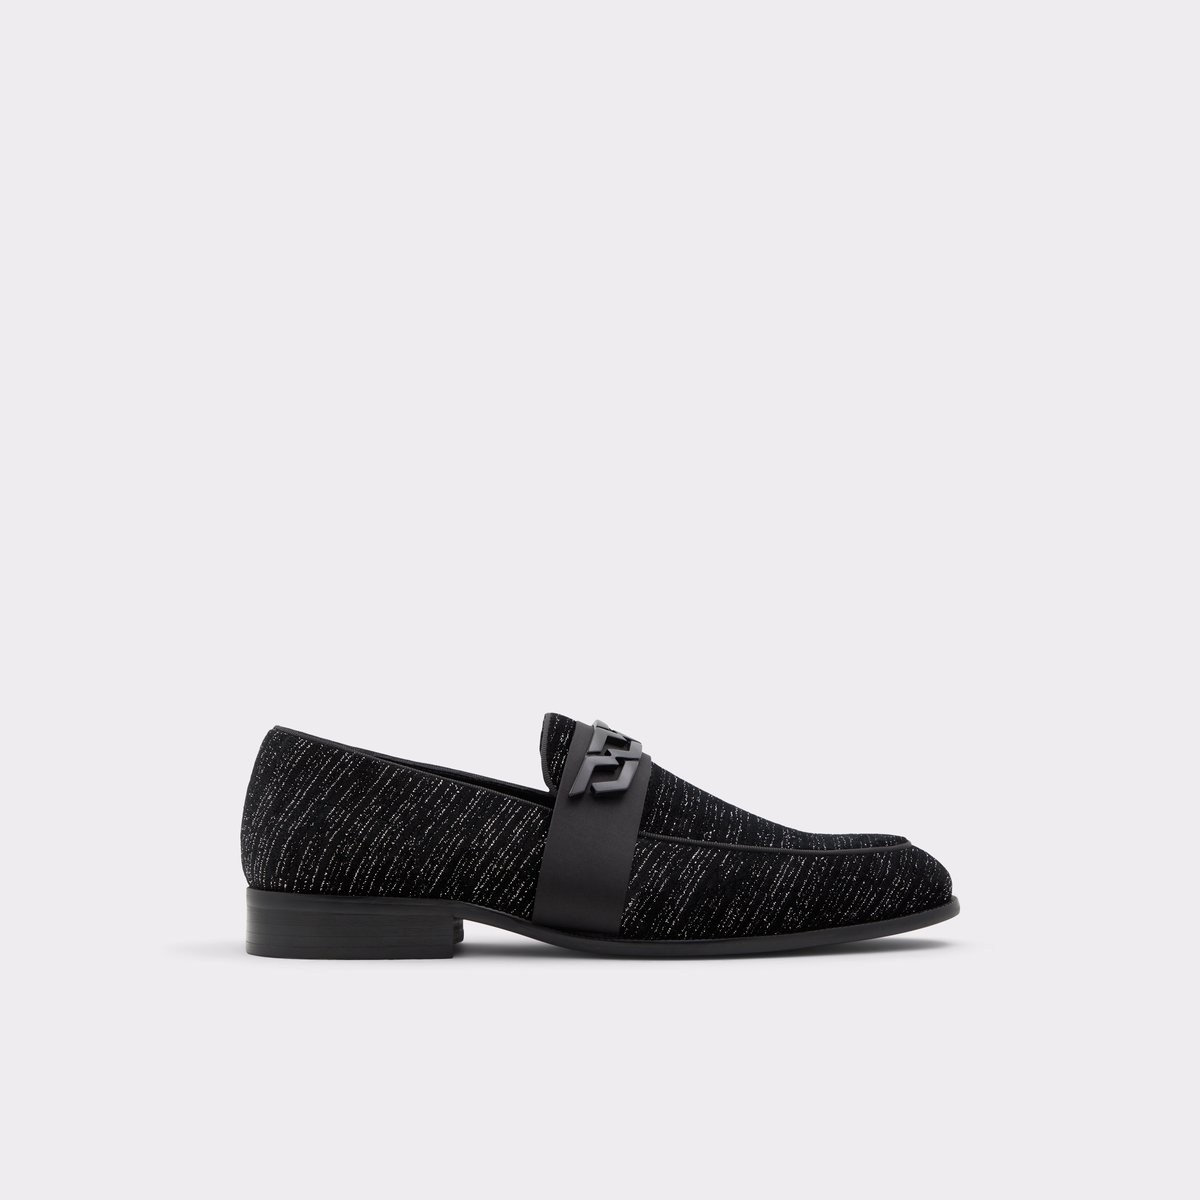 Sid Black Textile Men's Dress Shoes | ALDO US